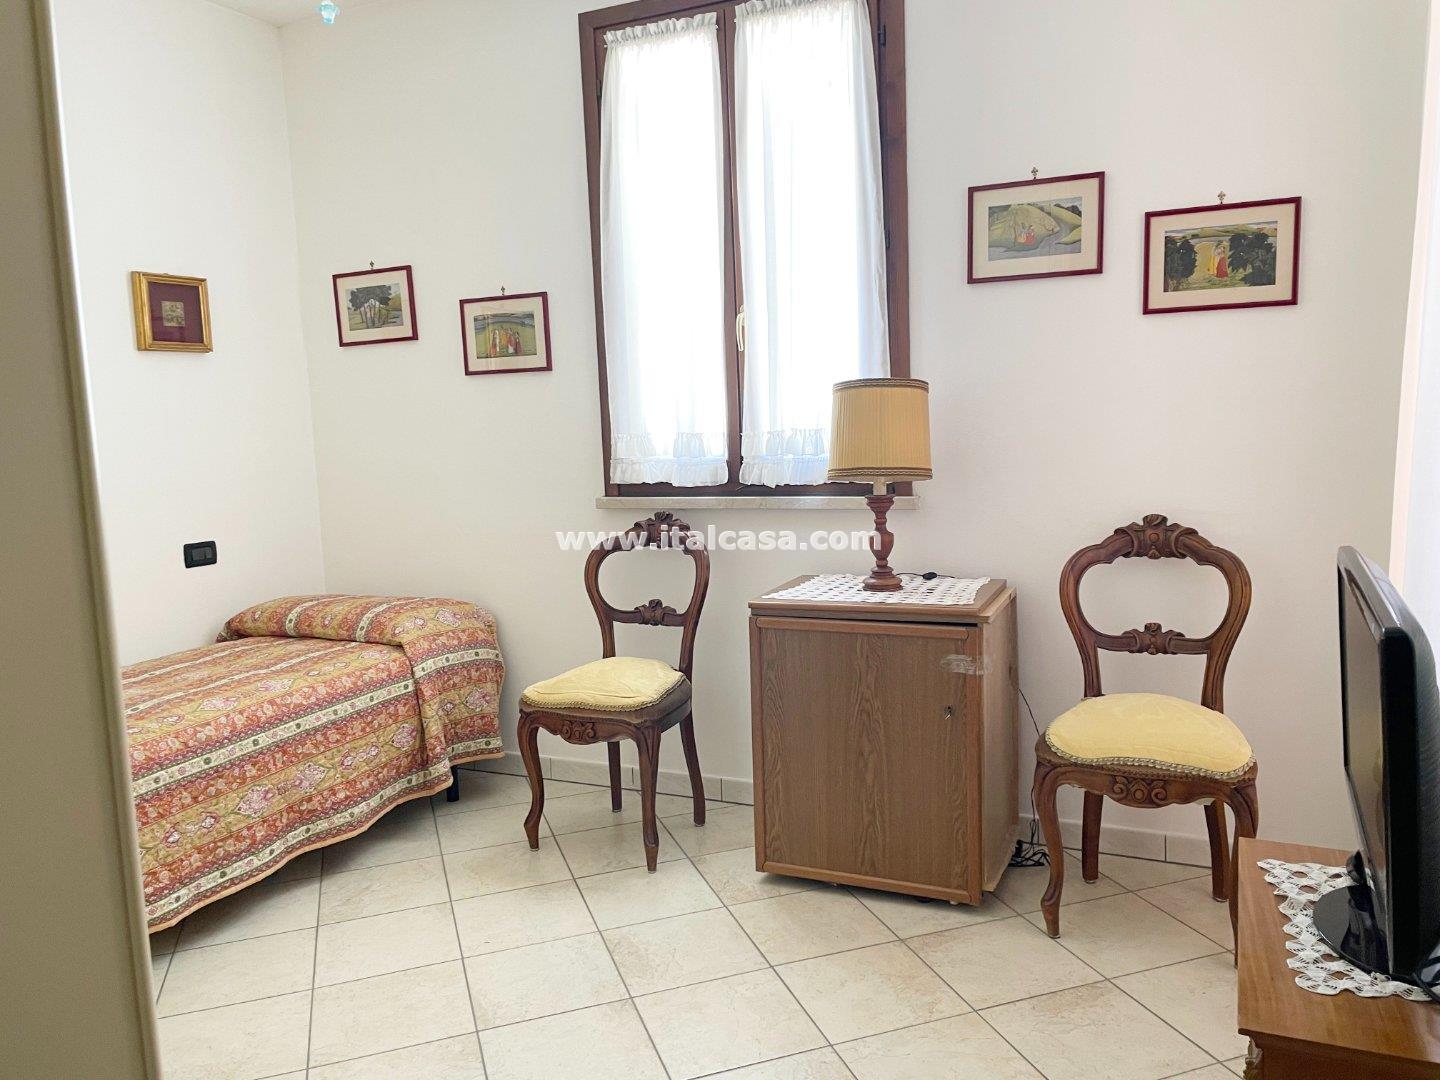 Appartamento in vendita a Porto Mantovano